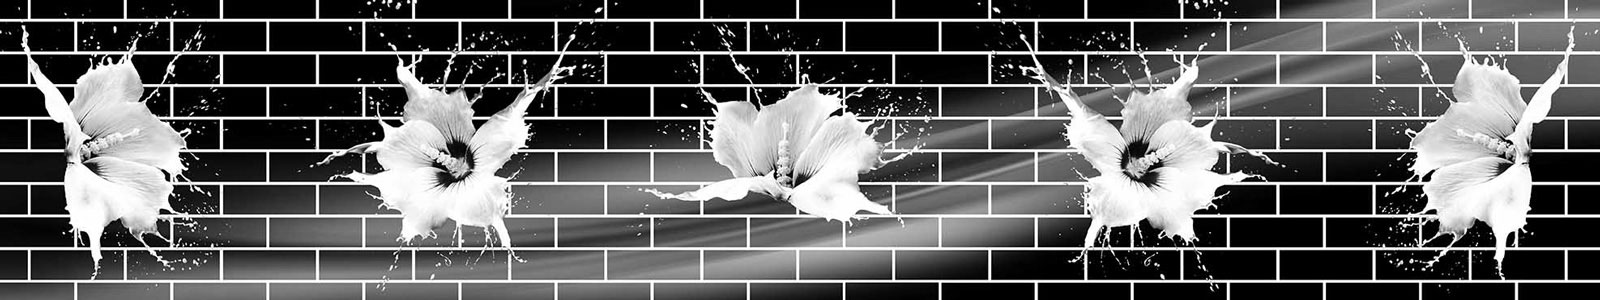 №6258 - Белые цветы на фоне кирпичной стены